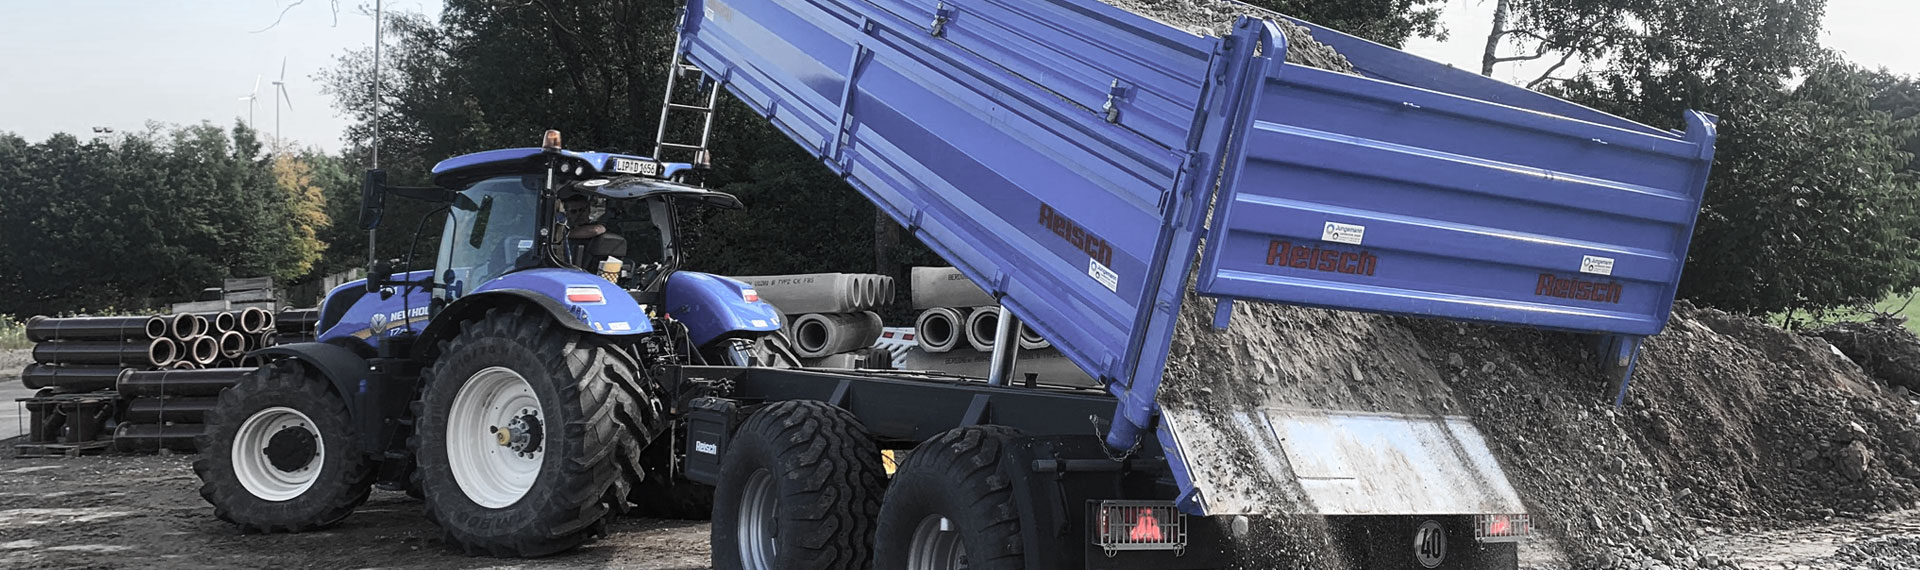 รถบรรทุกดัมพ์สีน้ำเงินพร้อมตัวถังที่ผลิตจากแผ่นเหล็ก Hardox® บรรทุกหินจํานวนมาก